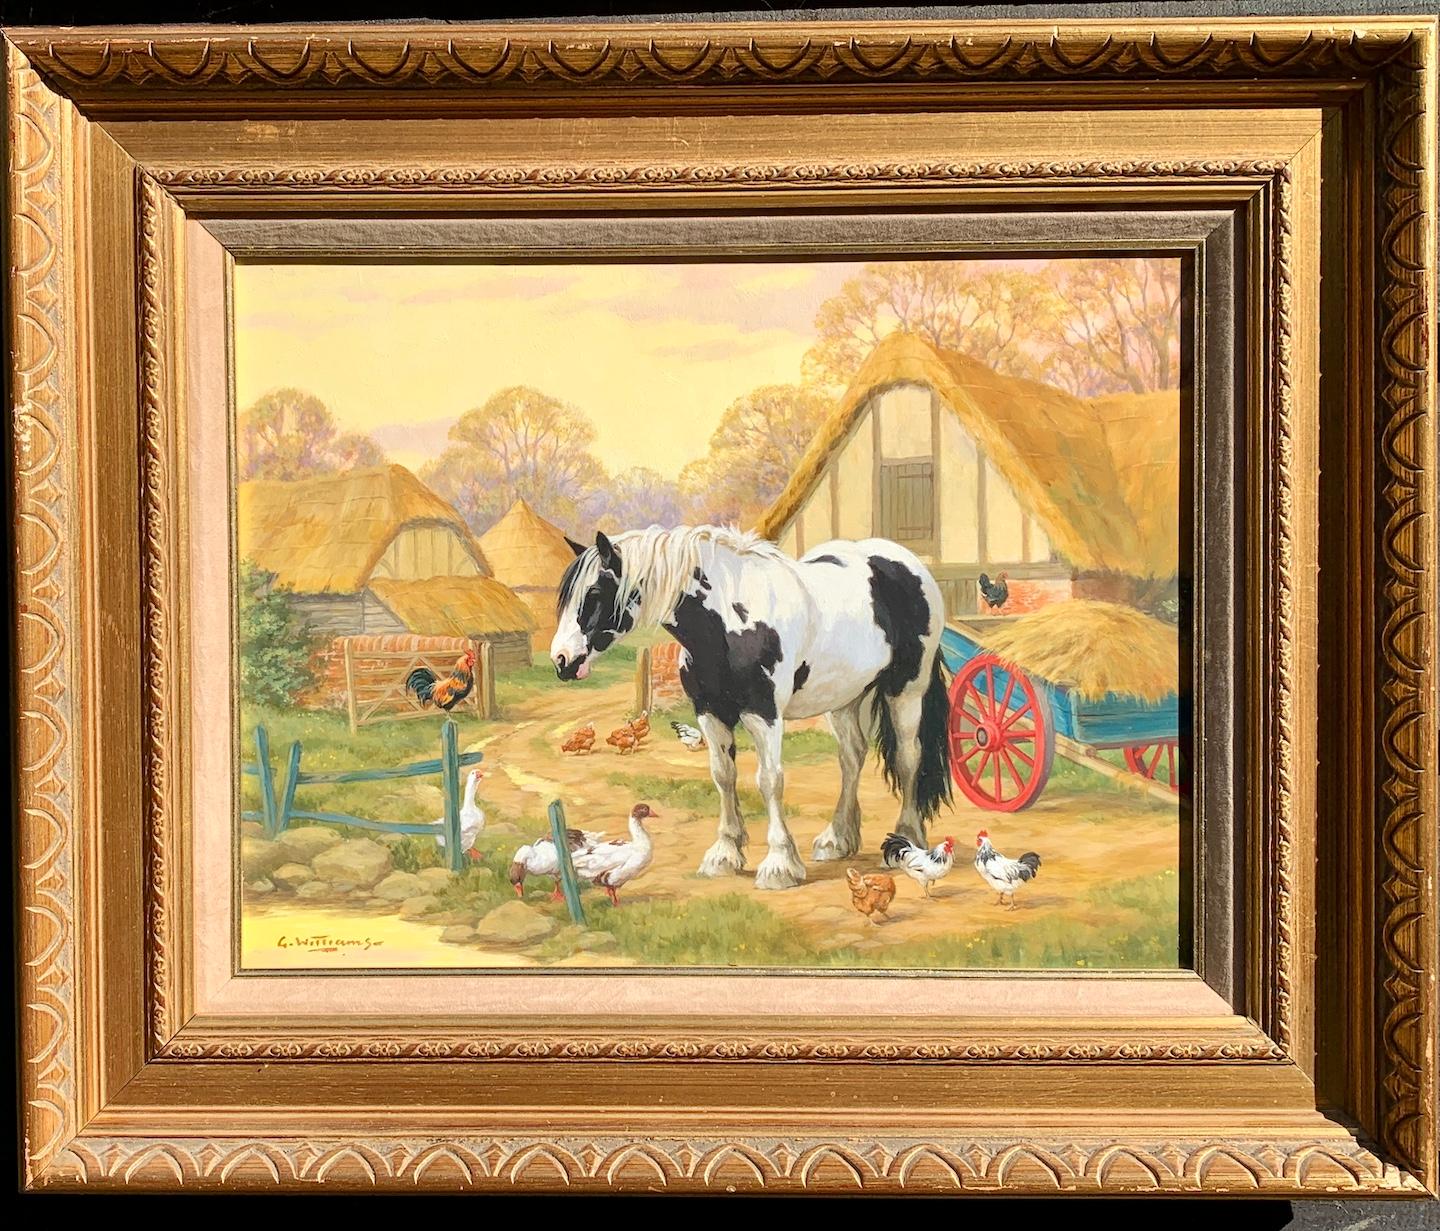 Englische Bauernhofsszene mit einem Shire-Pferd, Hühnern, Enten und einem Bauernhaus